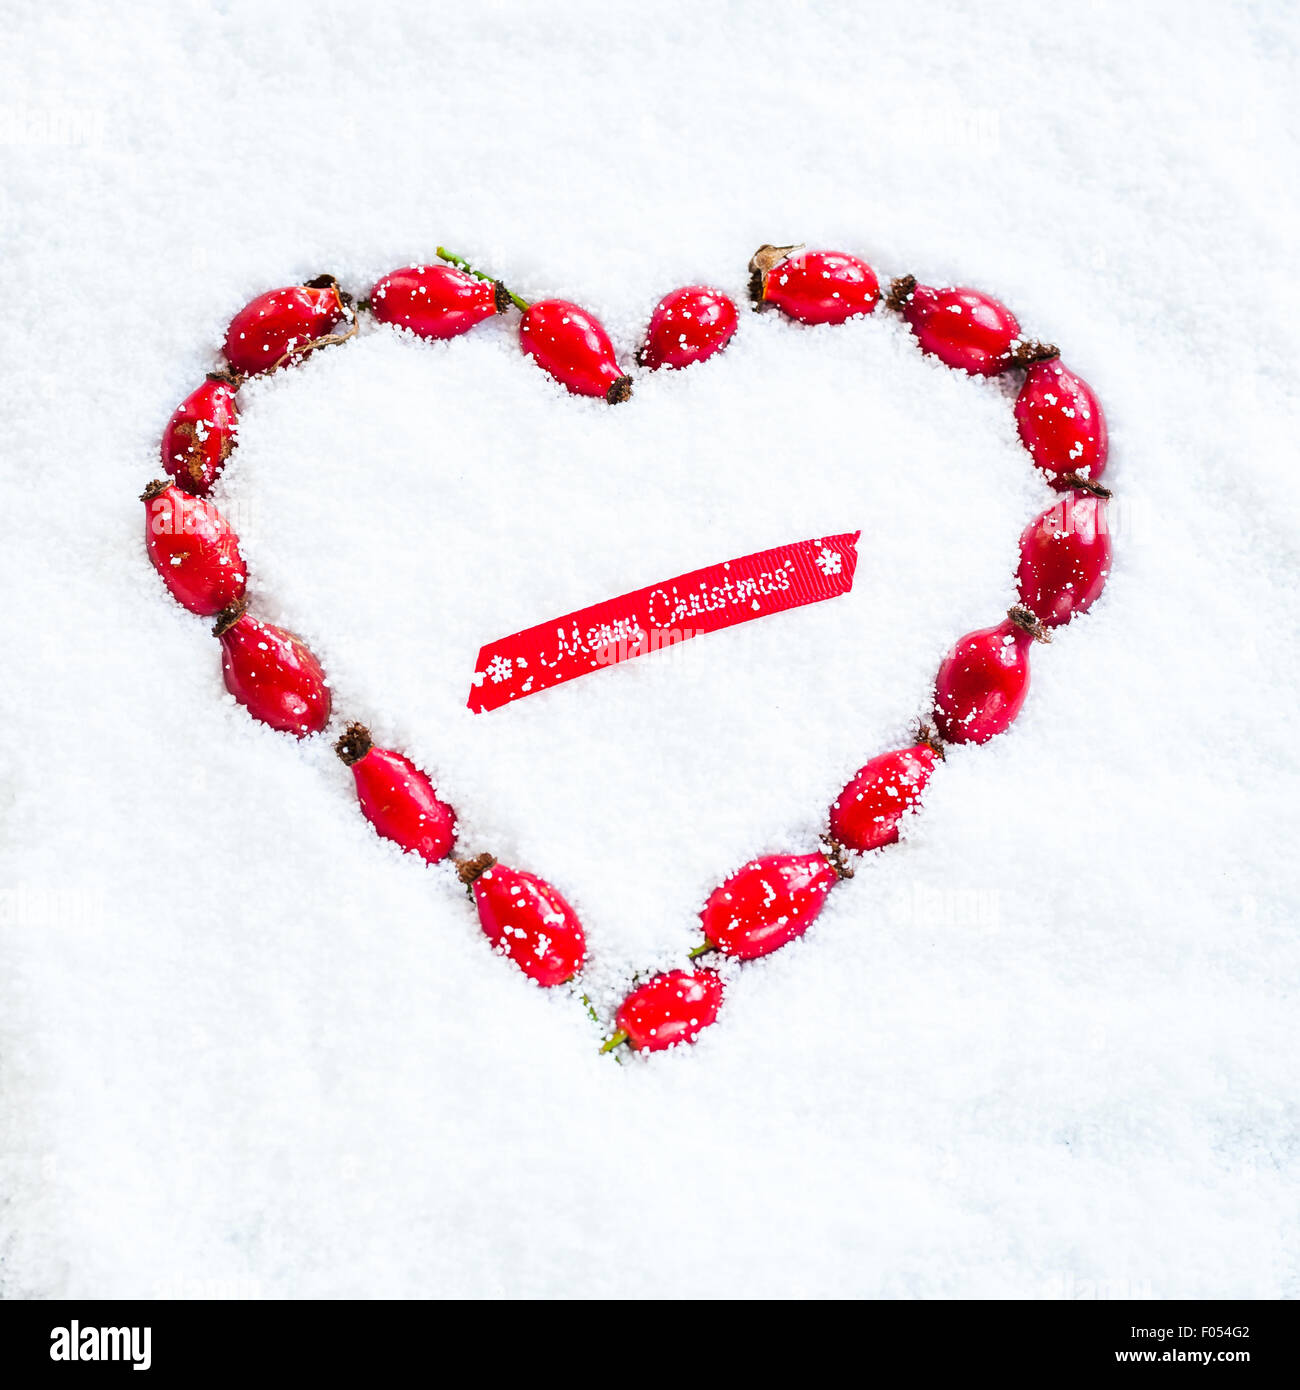 Una corona con forma de corazón hecho con escaramujos establecidos en la nieve, y el trozo de cinta roja diciendo ¡Feliz Navidad! Foto de stock